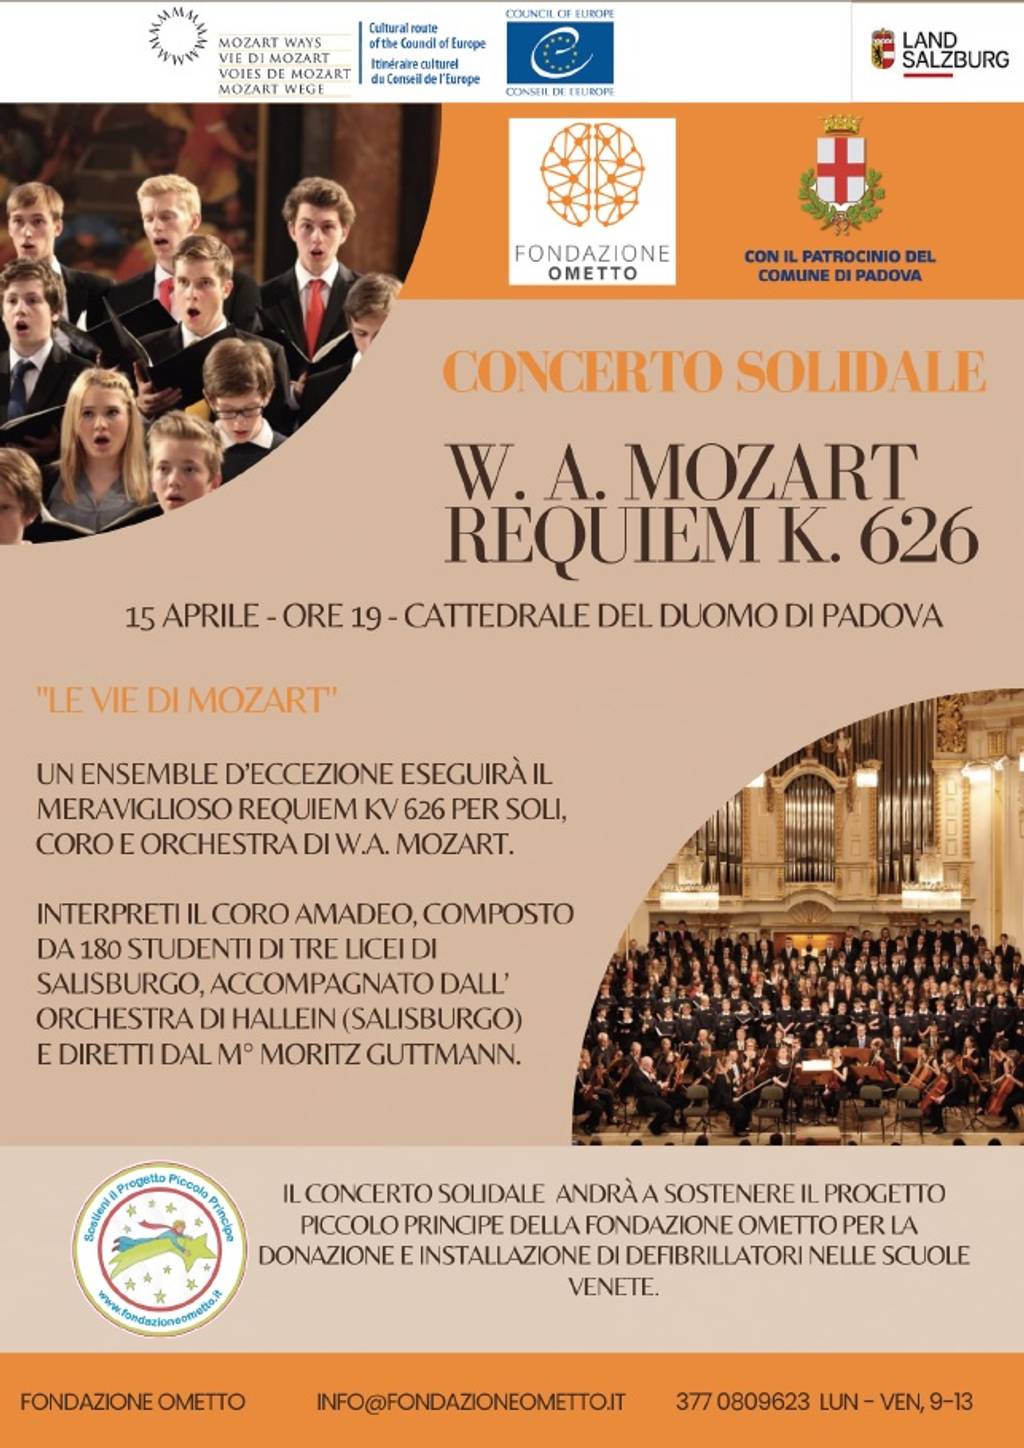 Le vie di Mozart - Concerto solidale